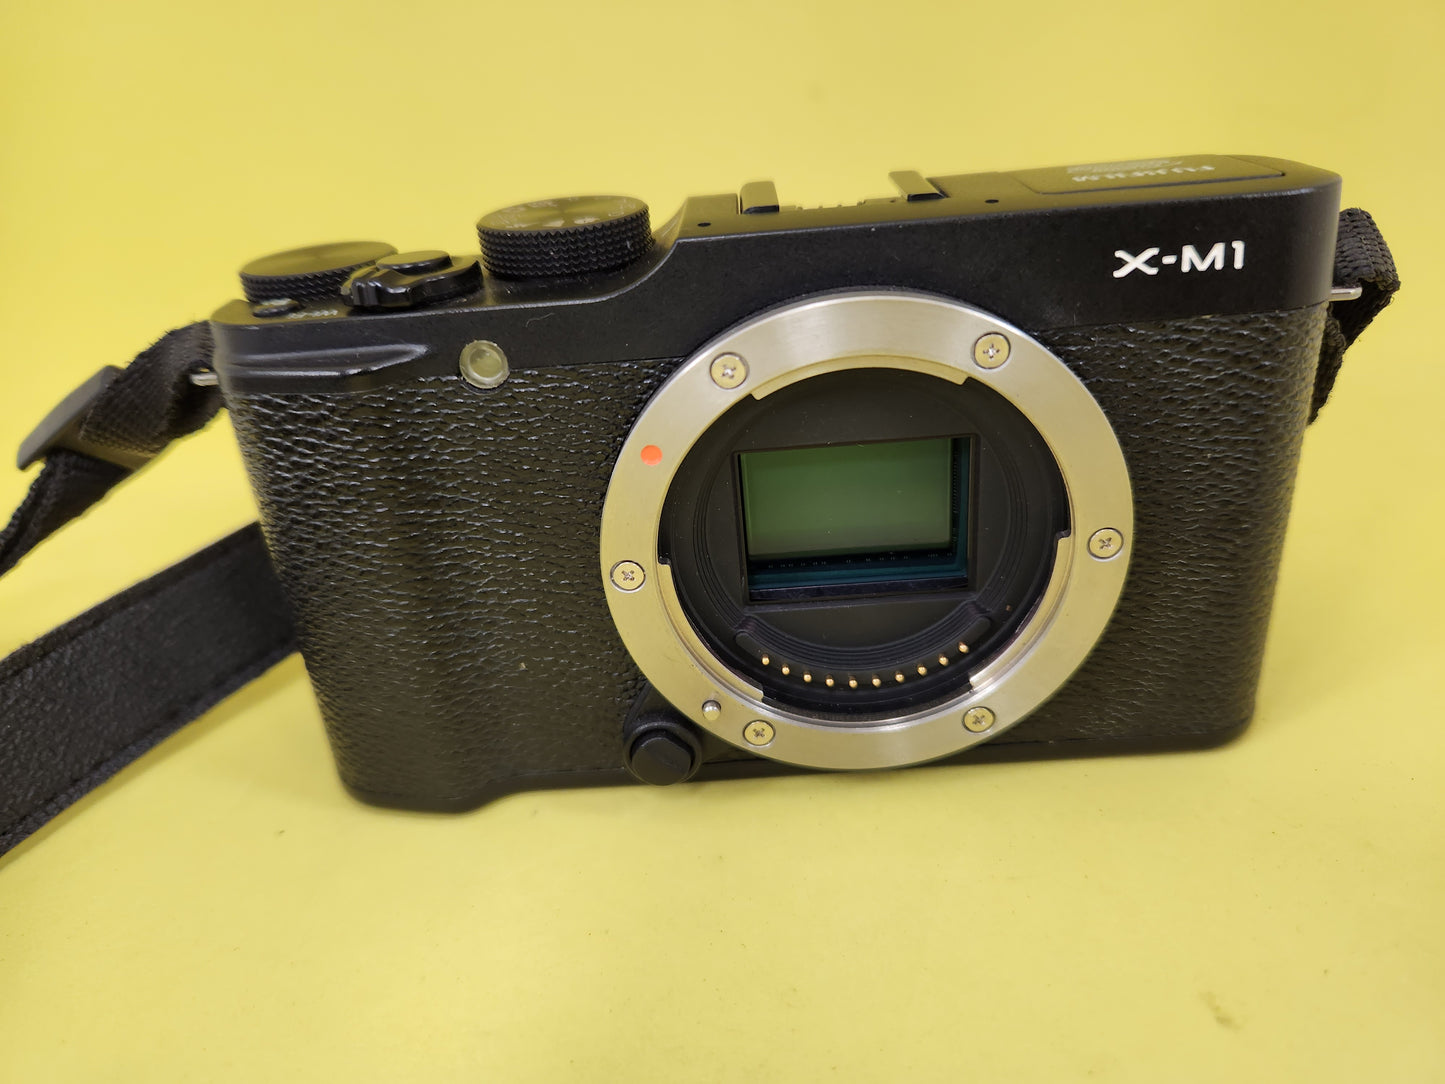 Fujifilm x-M1 body only with original Fujifilm battery